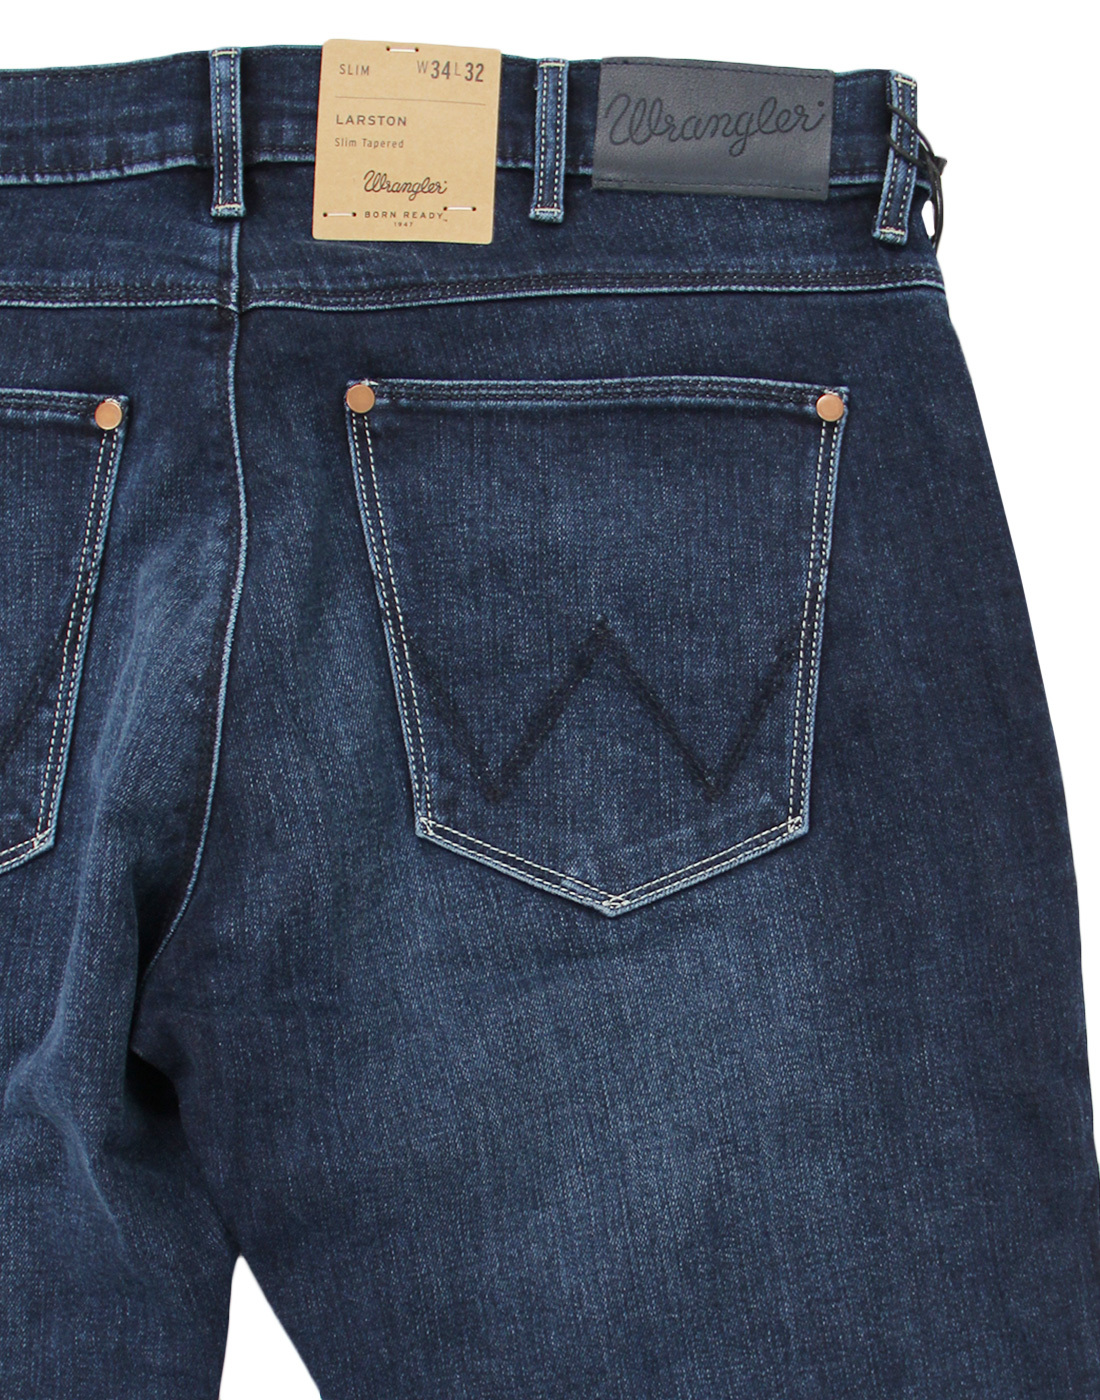 wrangler soft jeans